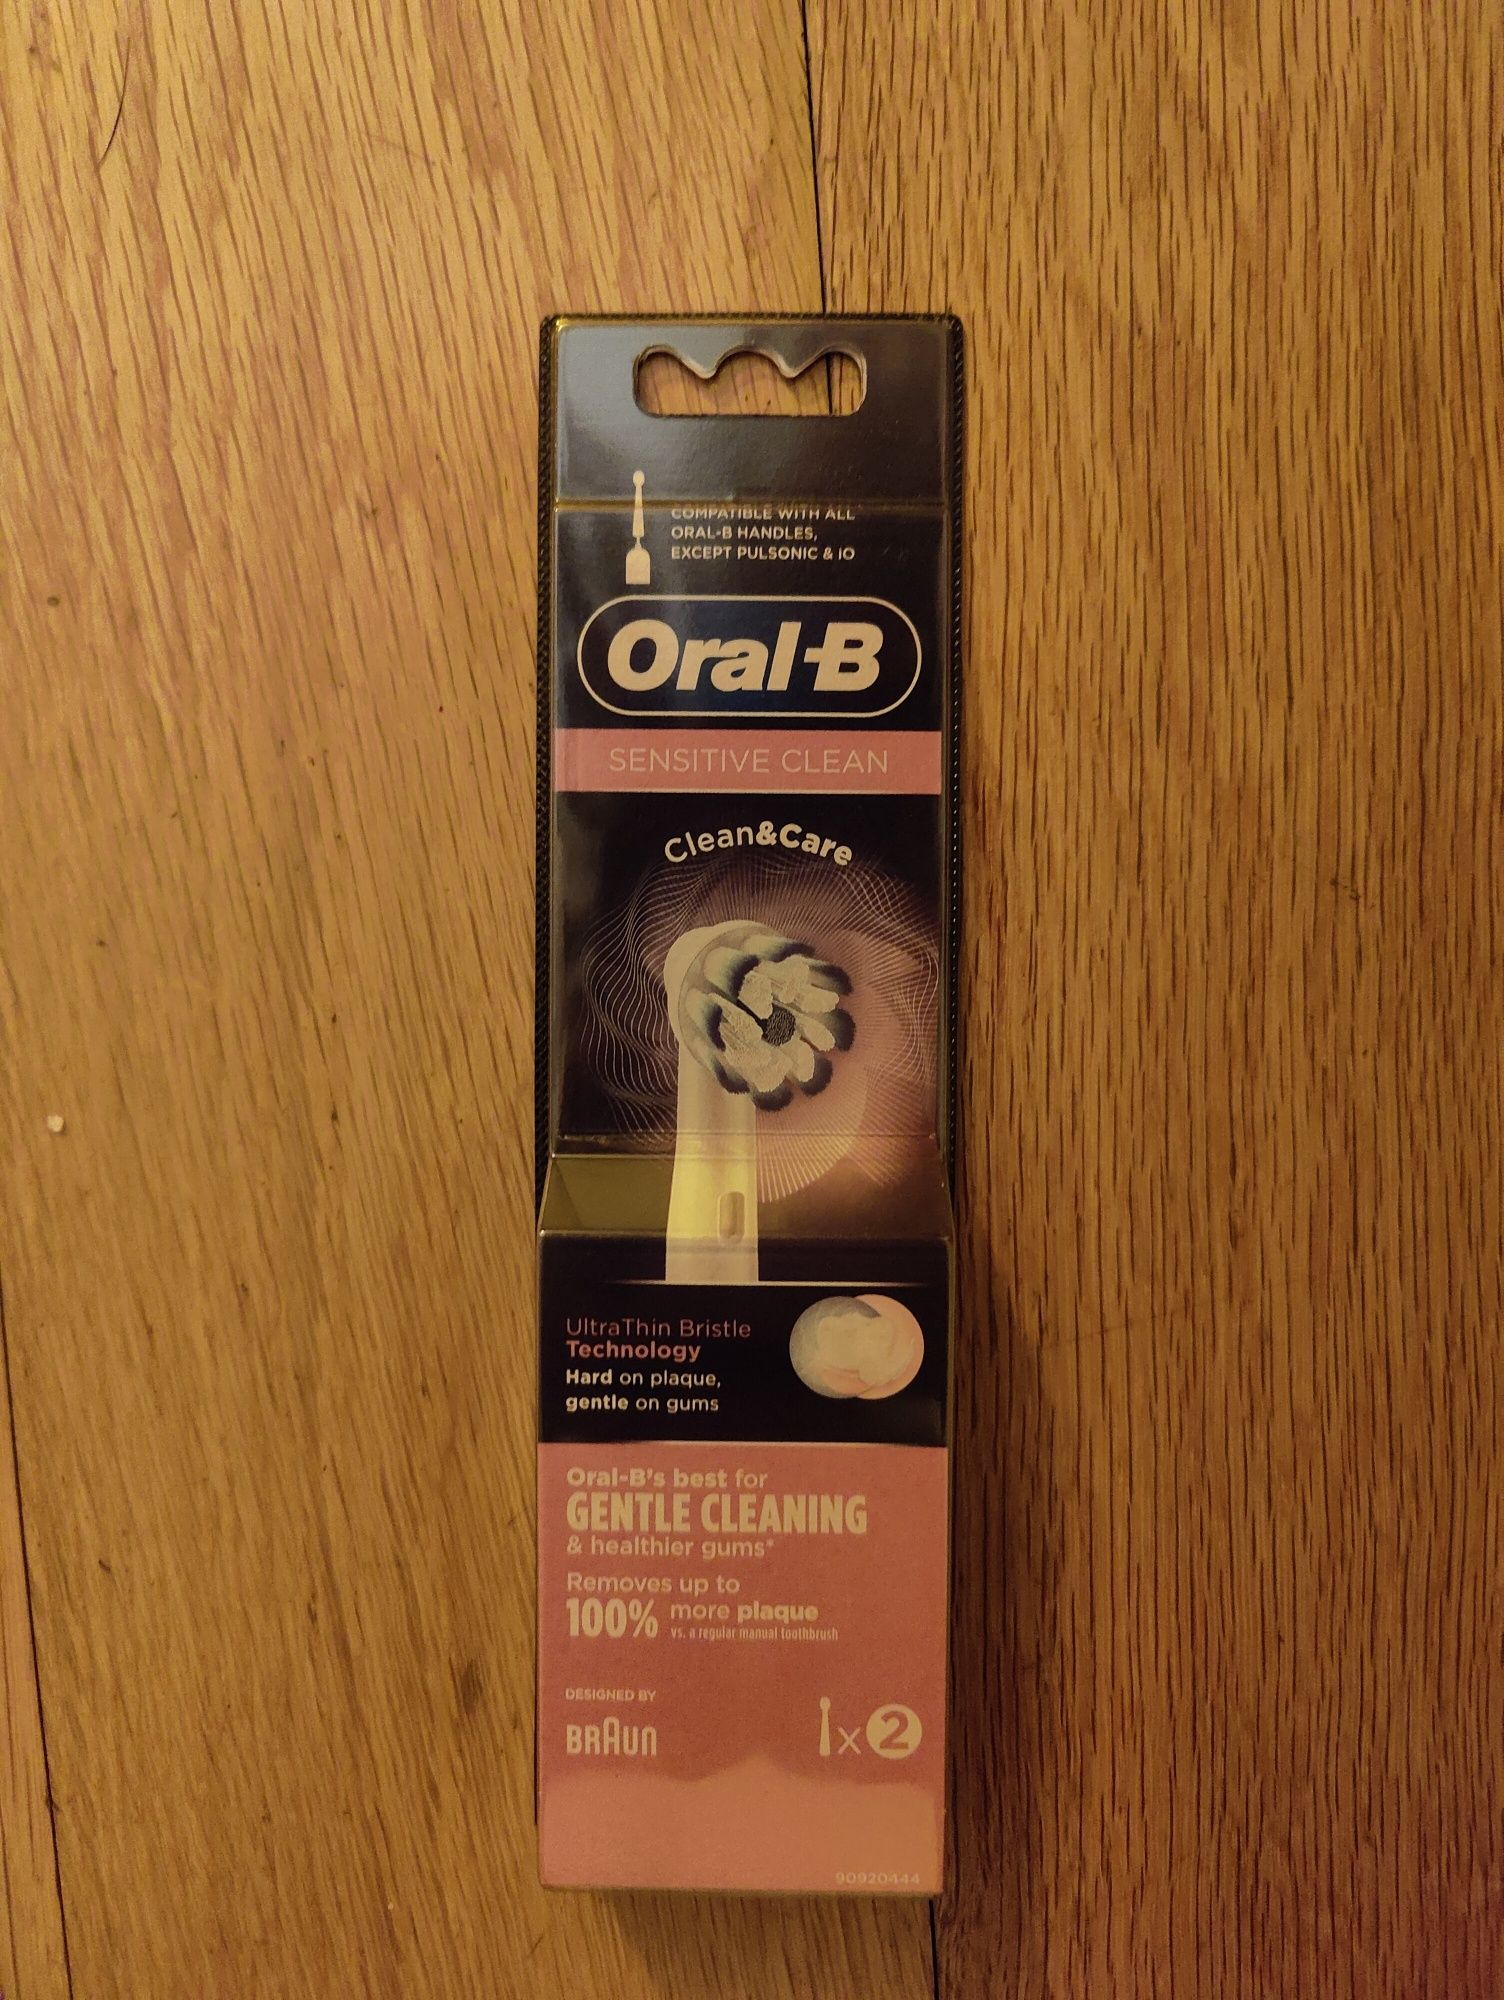 Recarga Oral-B Sensitive Clean